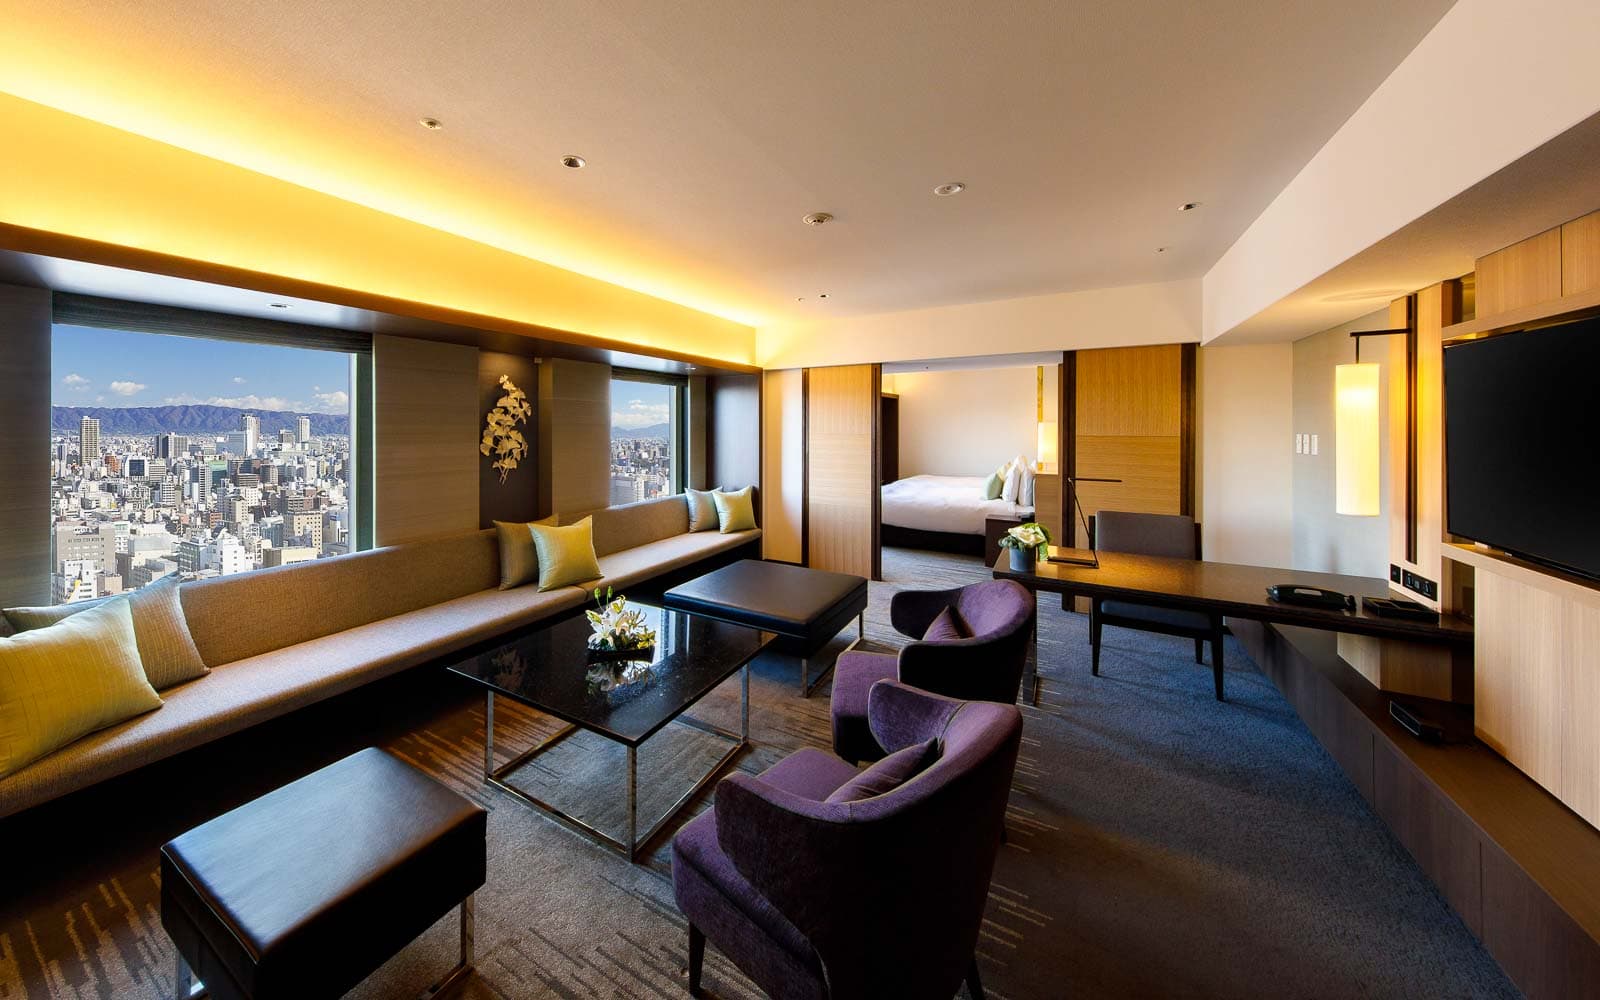 ニッコープレミアム エグゼクティブスイート リビングルーム / Nikko Premium Executive Suite Living Room